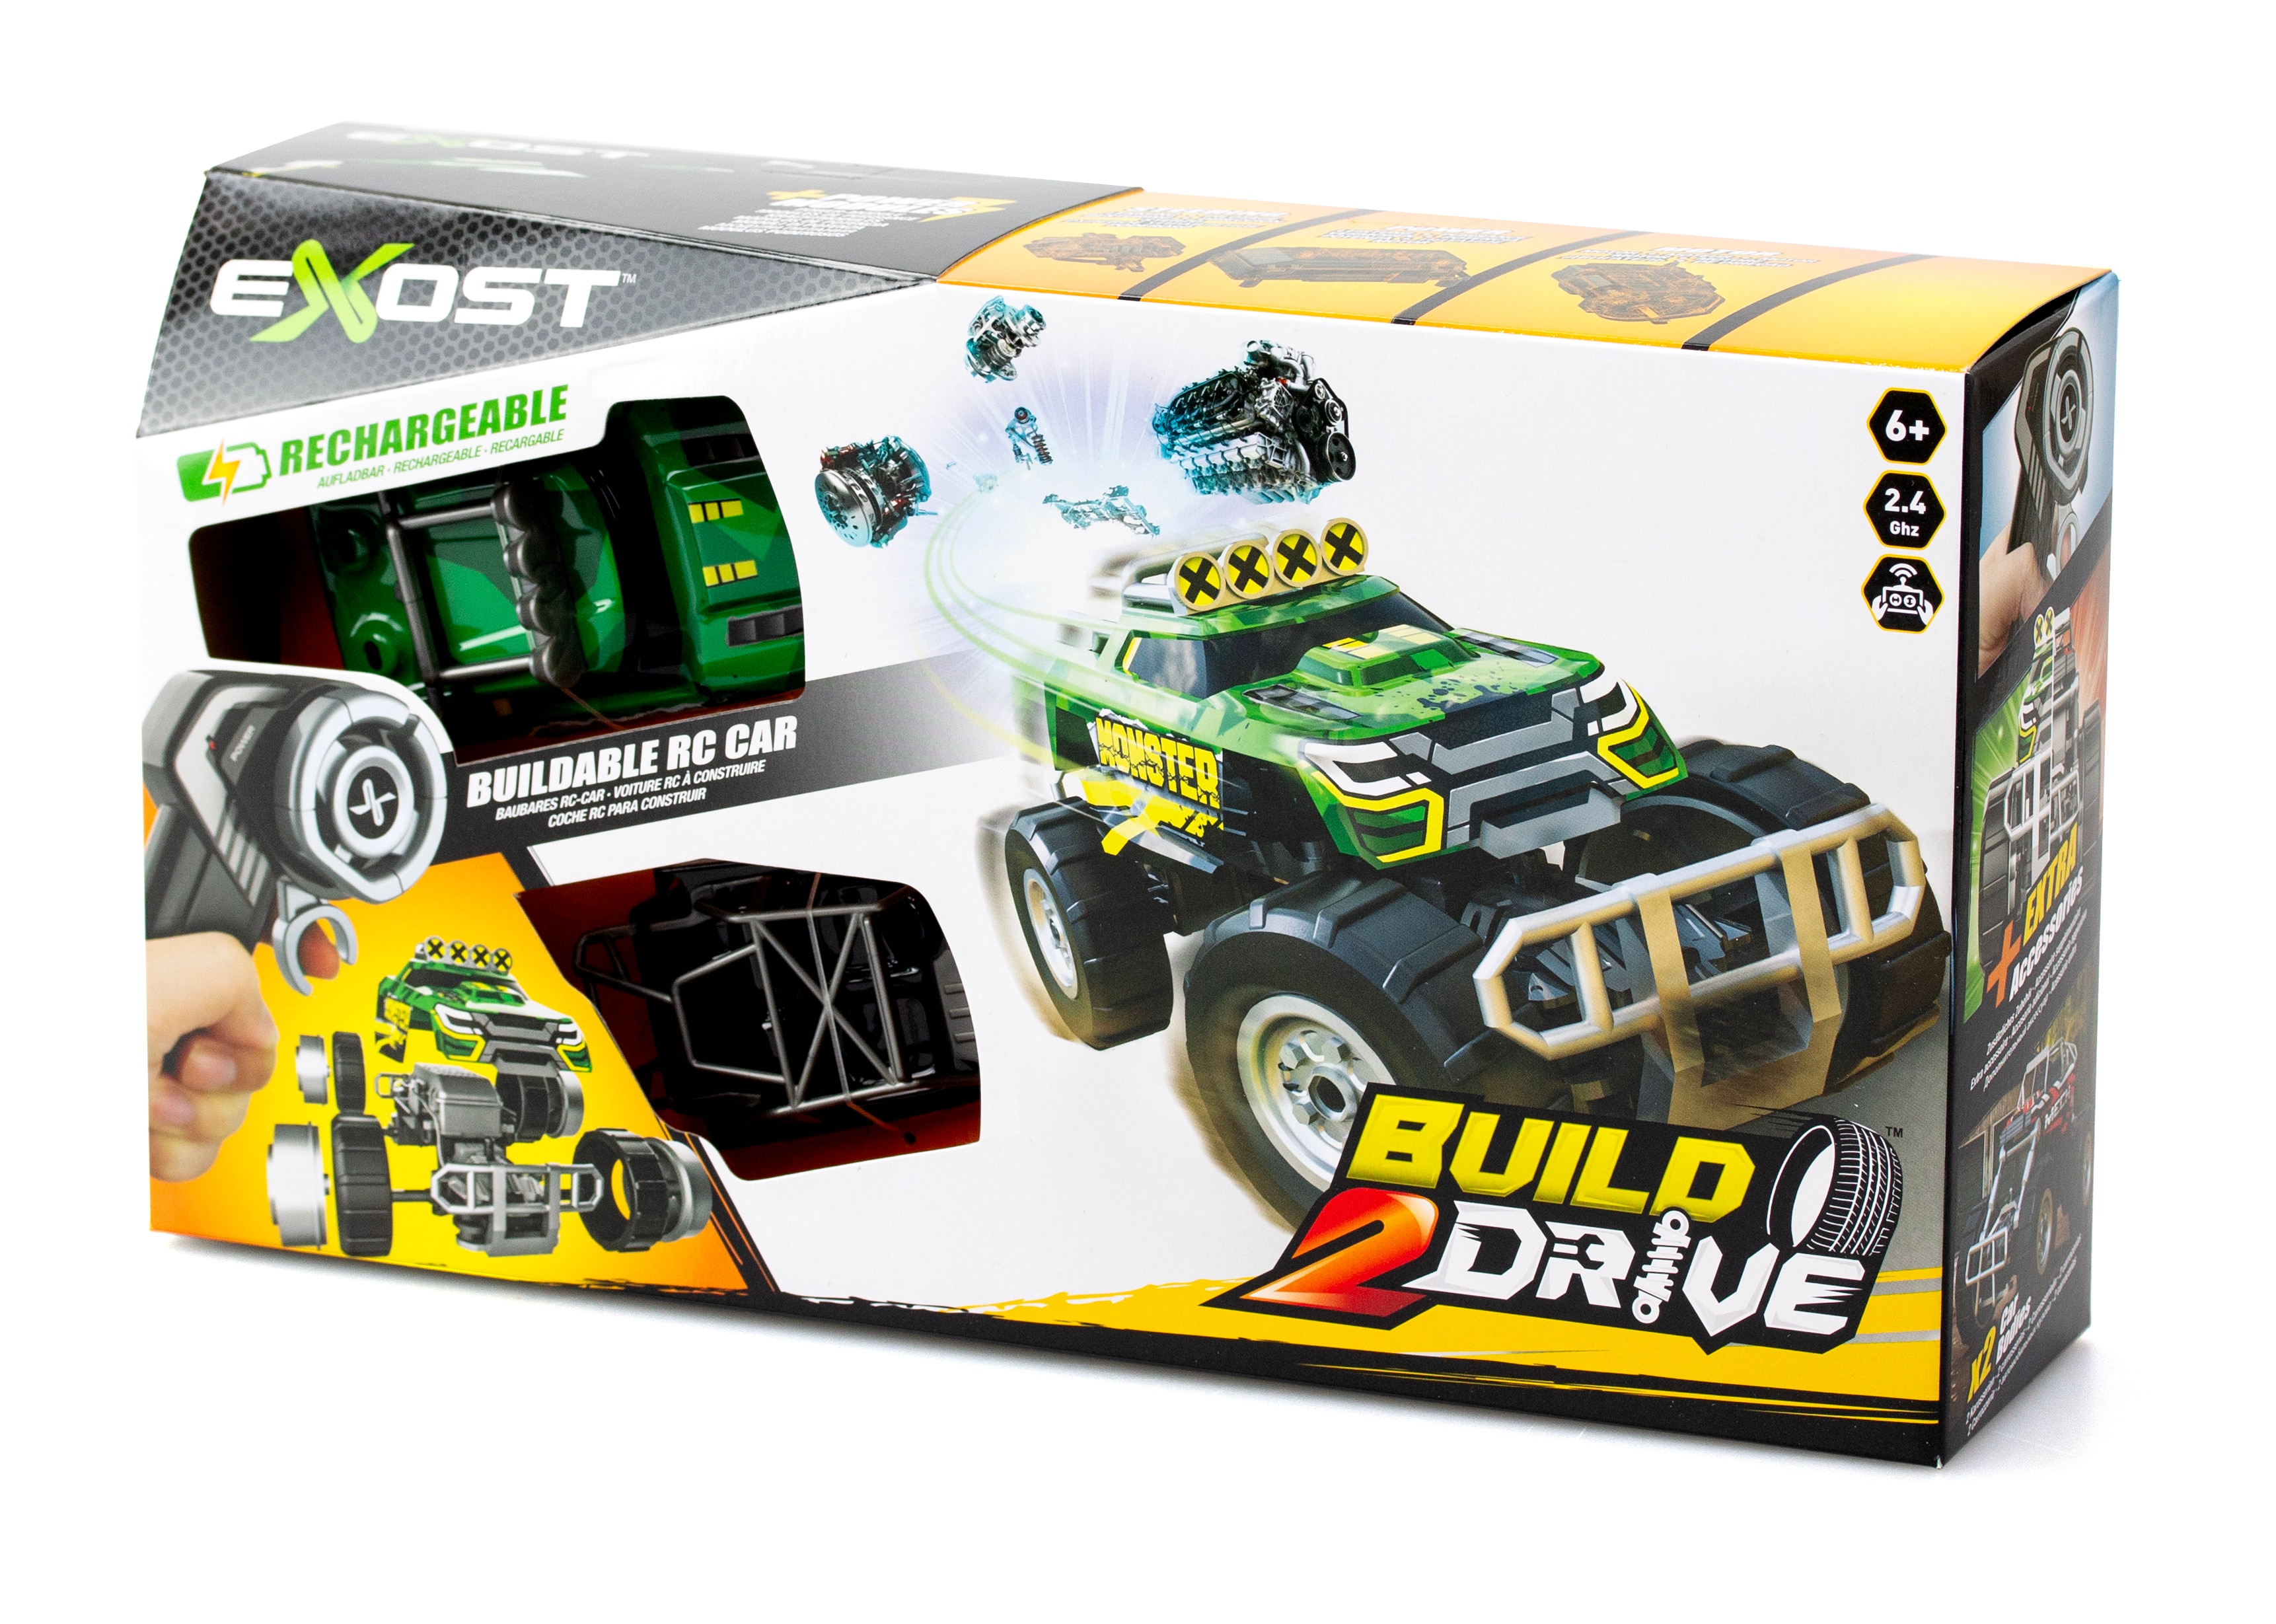 Radiostyrd Bil Build 2 Drive - Mighty Crawler, grön